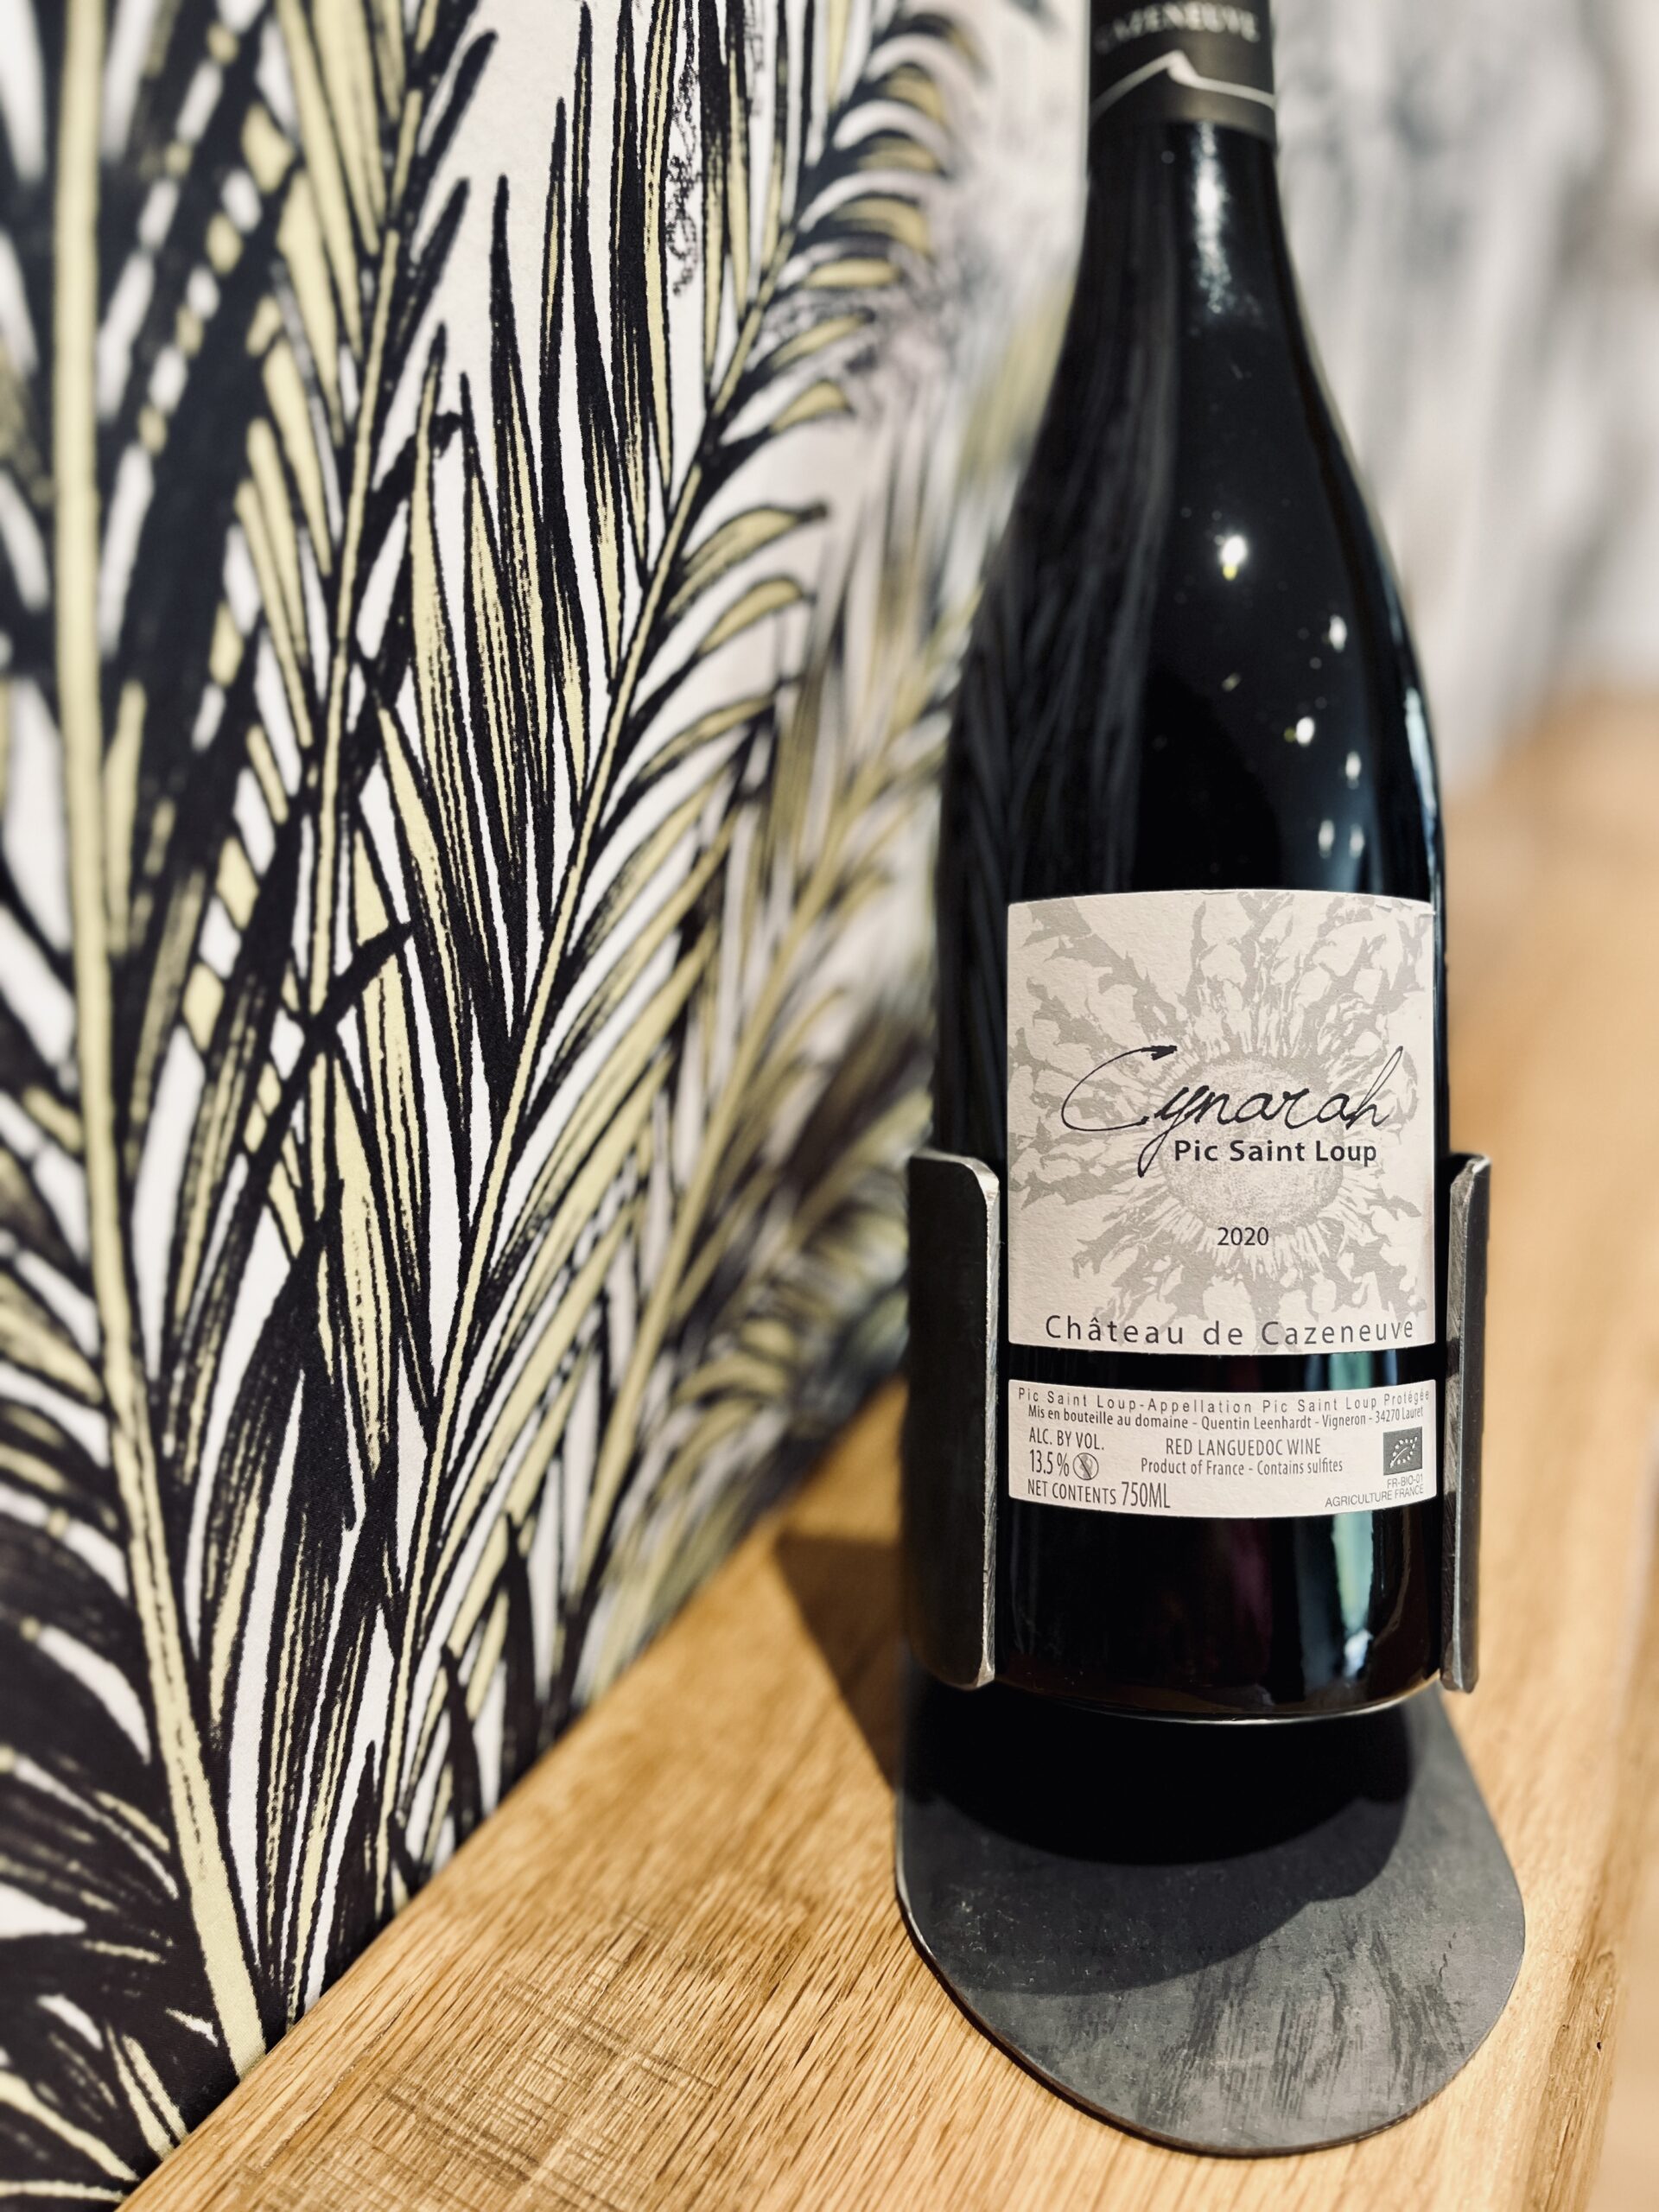 Porte bouteille fabriqué à Rodez création artisanale idée cadeau pour noël pour les amateurs de vin